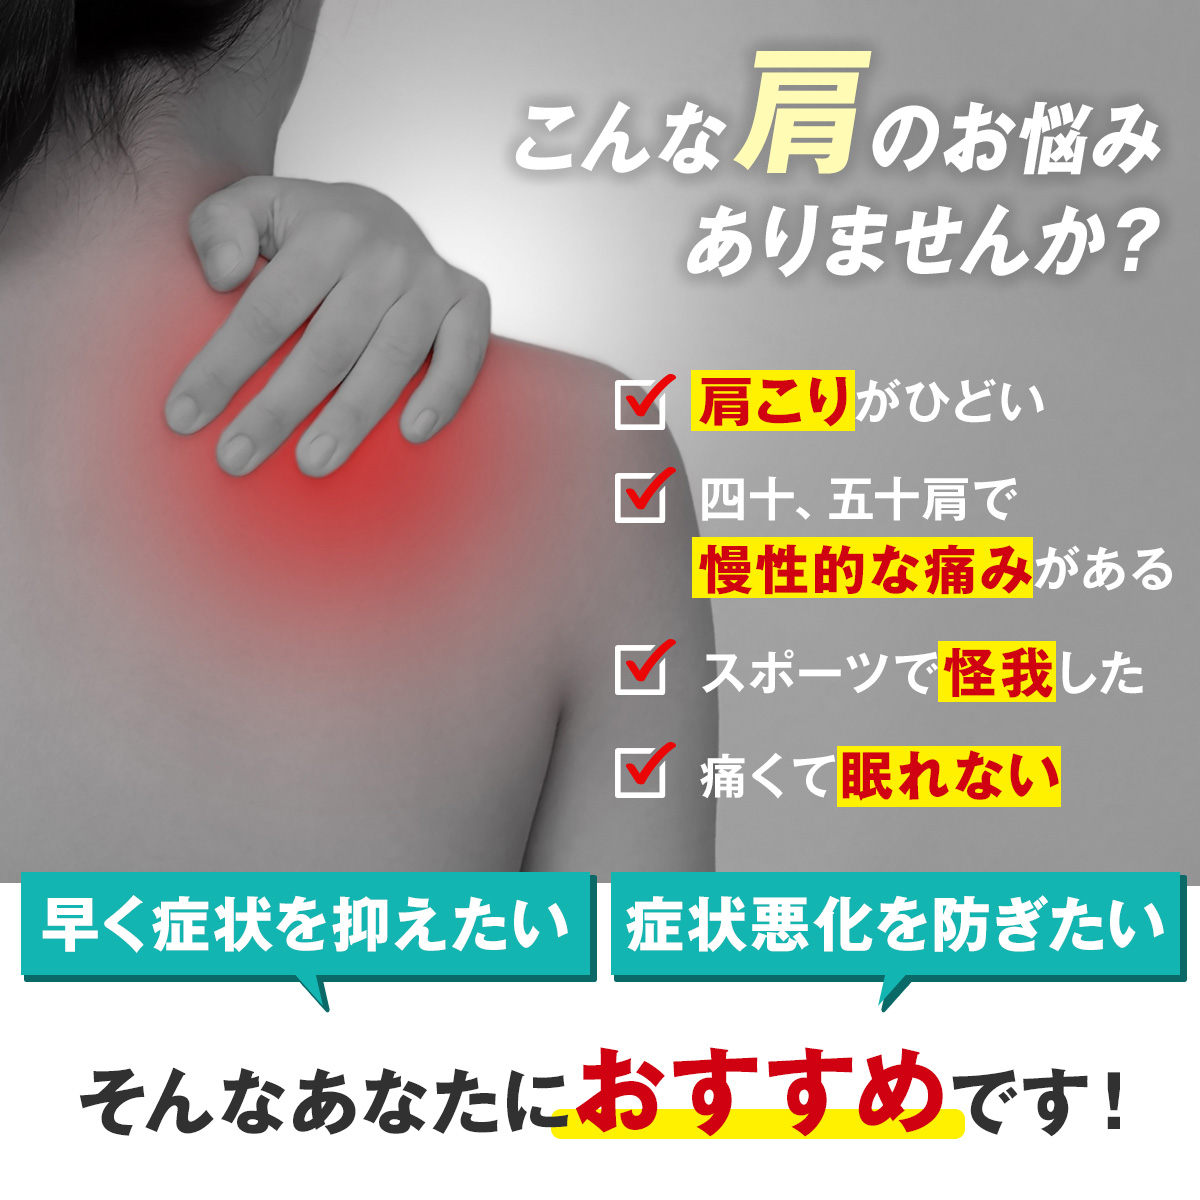  плечо опора медицинская помощь для "замороженное плечо" спортивный теплоизоляция женщина женский обе плечо 4 10 плечо .. бейсбол бадминтон bare- для мужчин и женщин онемение плеча 